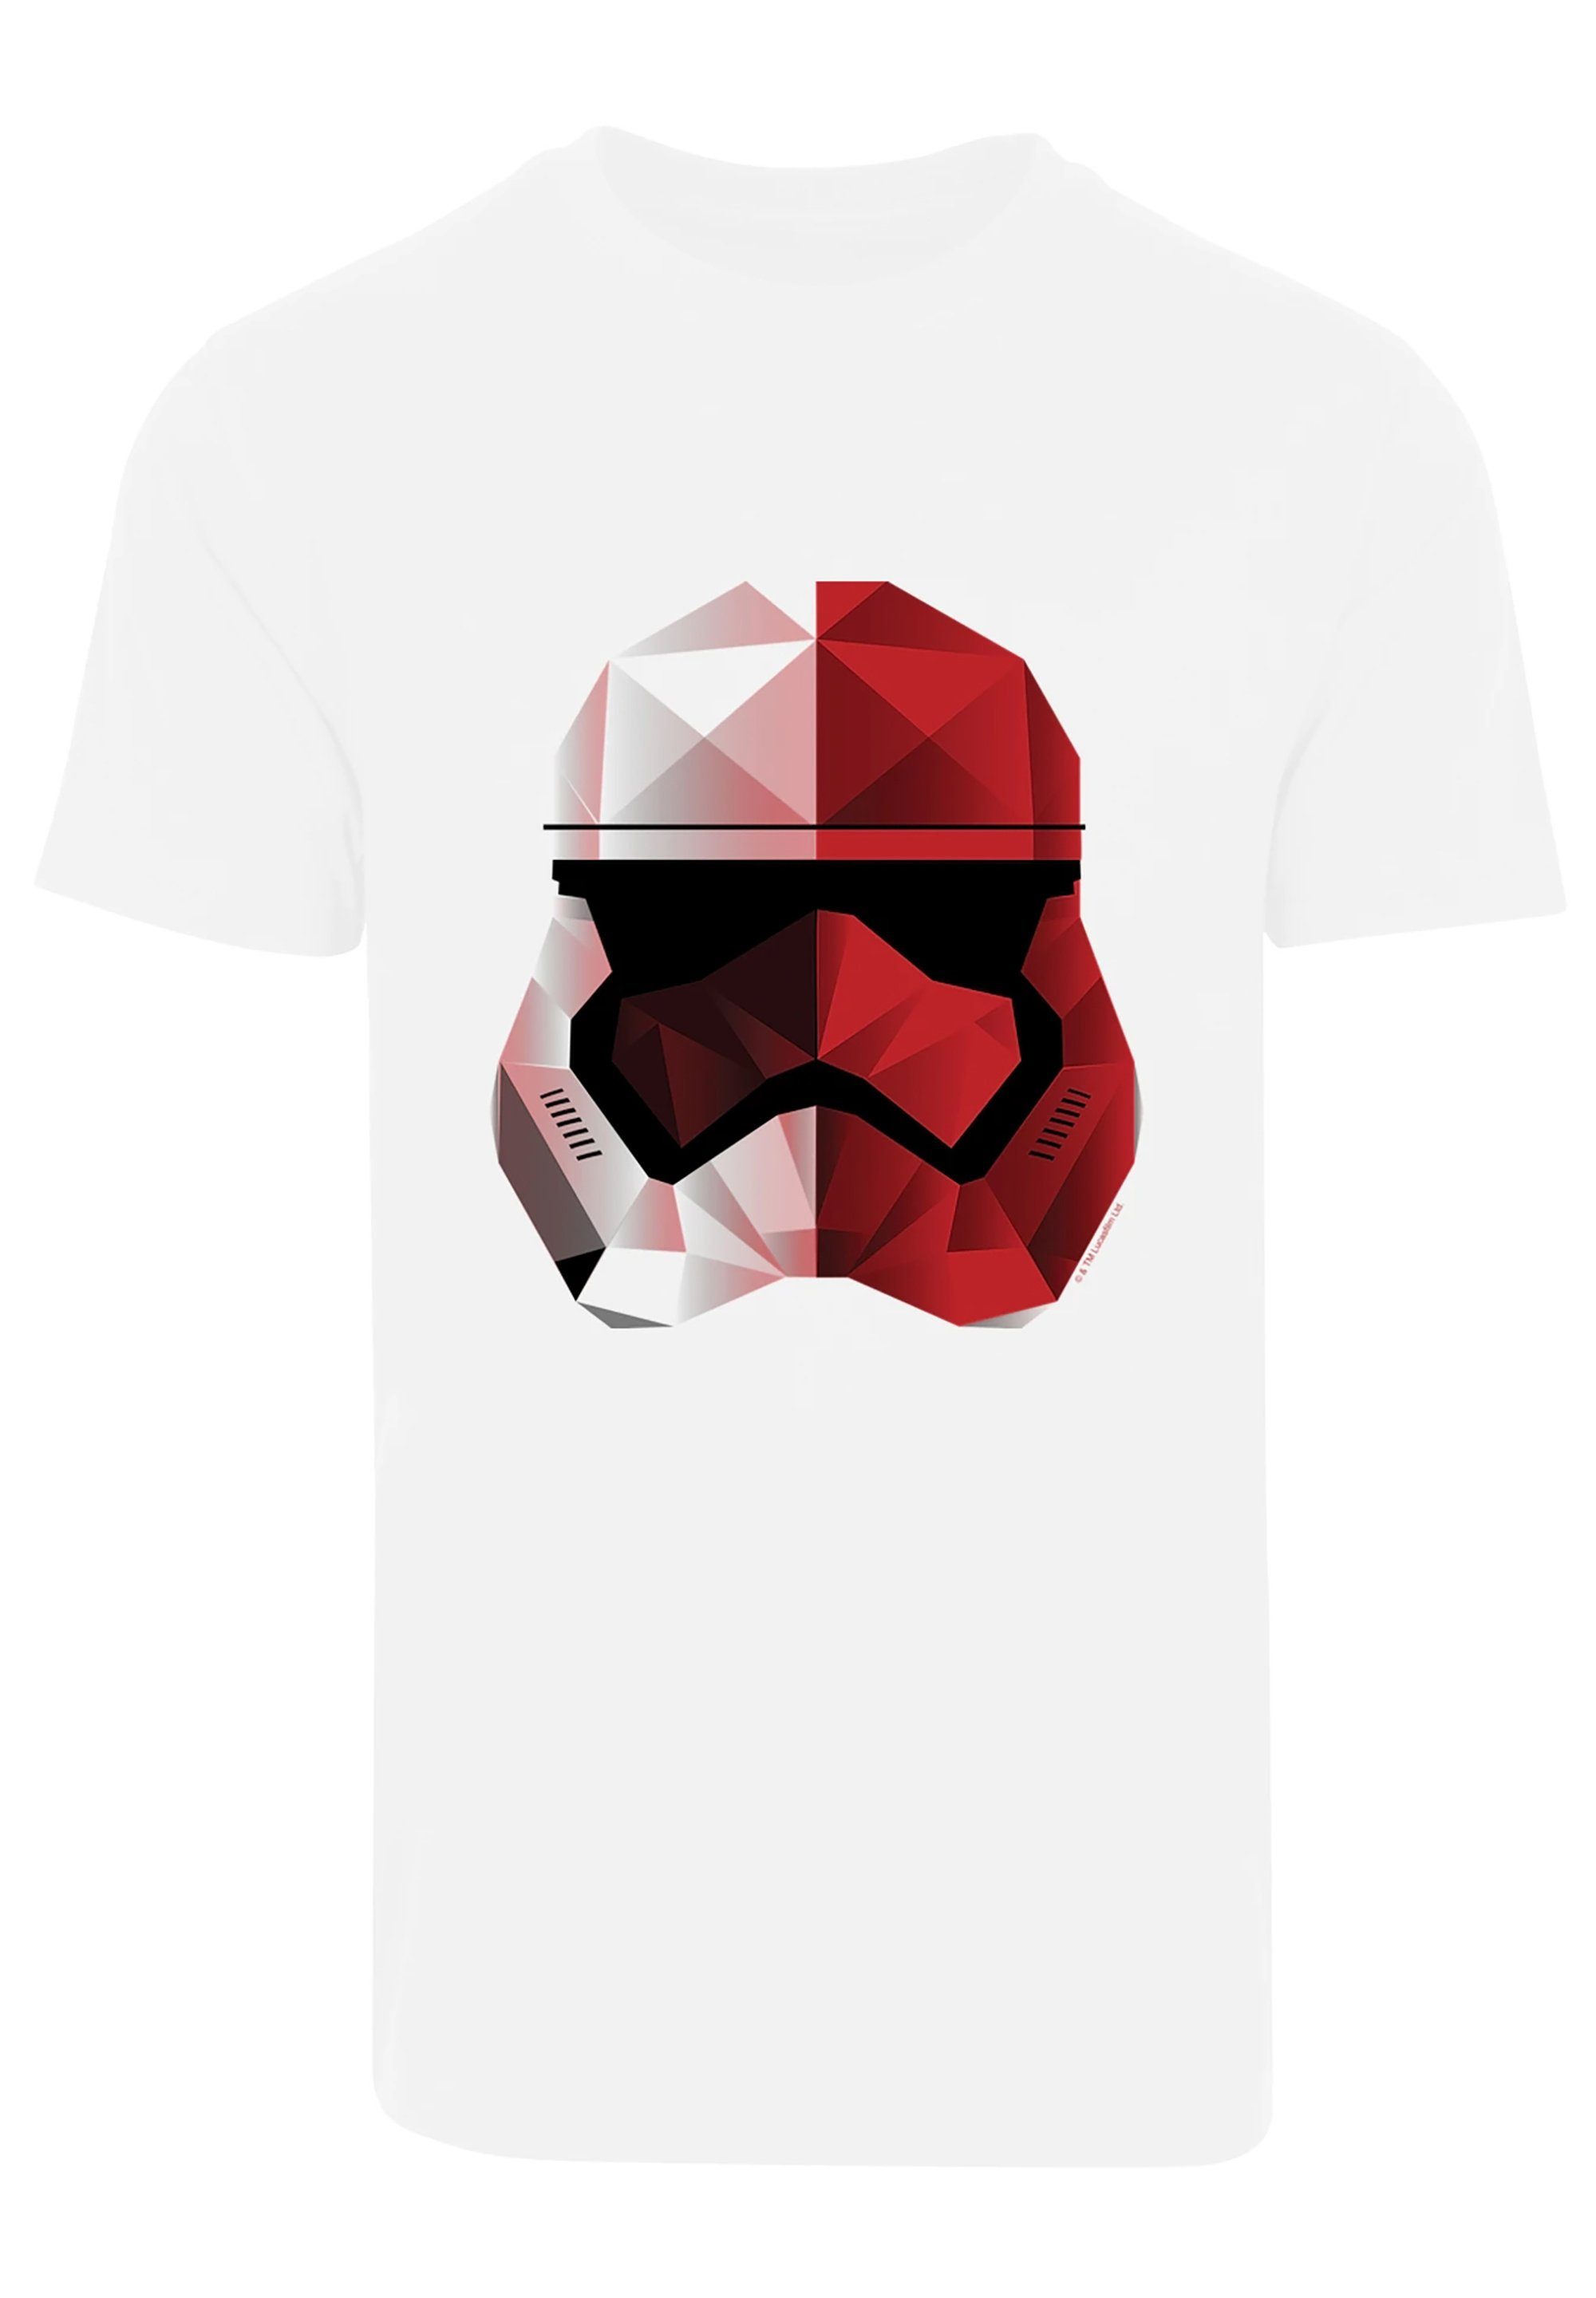 Last Cubist Jedi Fan F4NT4STIC Stromtrooper Merch The Helm Wars T-Shirt Print Star weiß